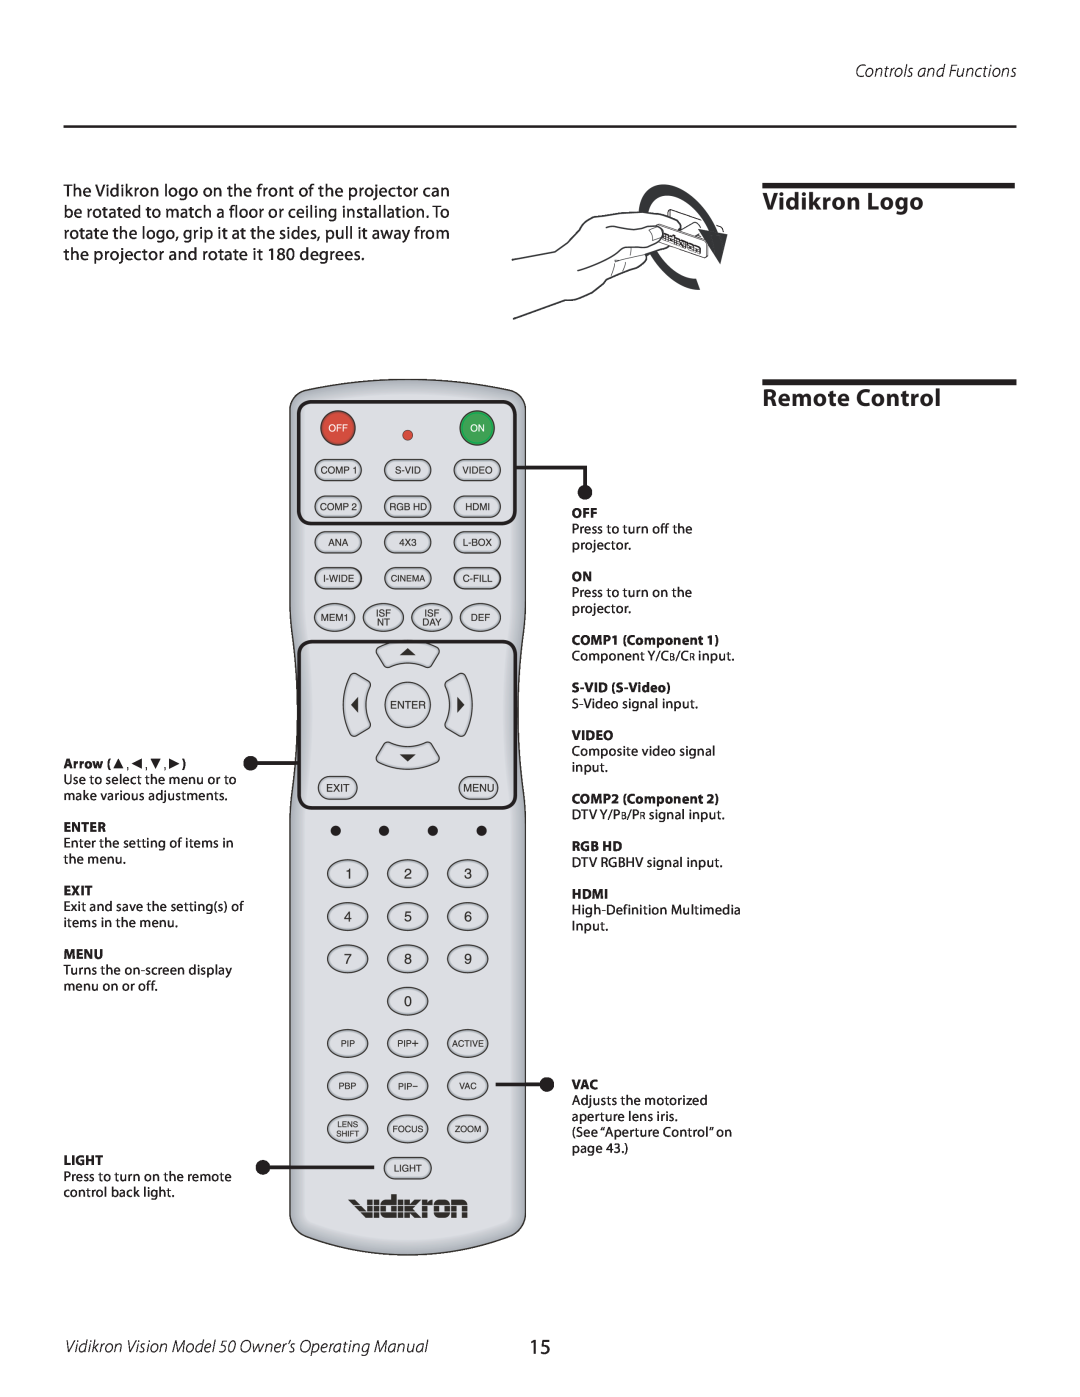 Vidikron manual Vidikron Logo Remote Control, Controls and Functions, Vidikron Vision Model 50 Owner’s Operating Manual 